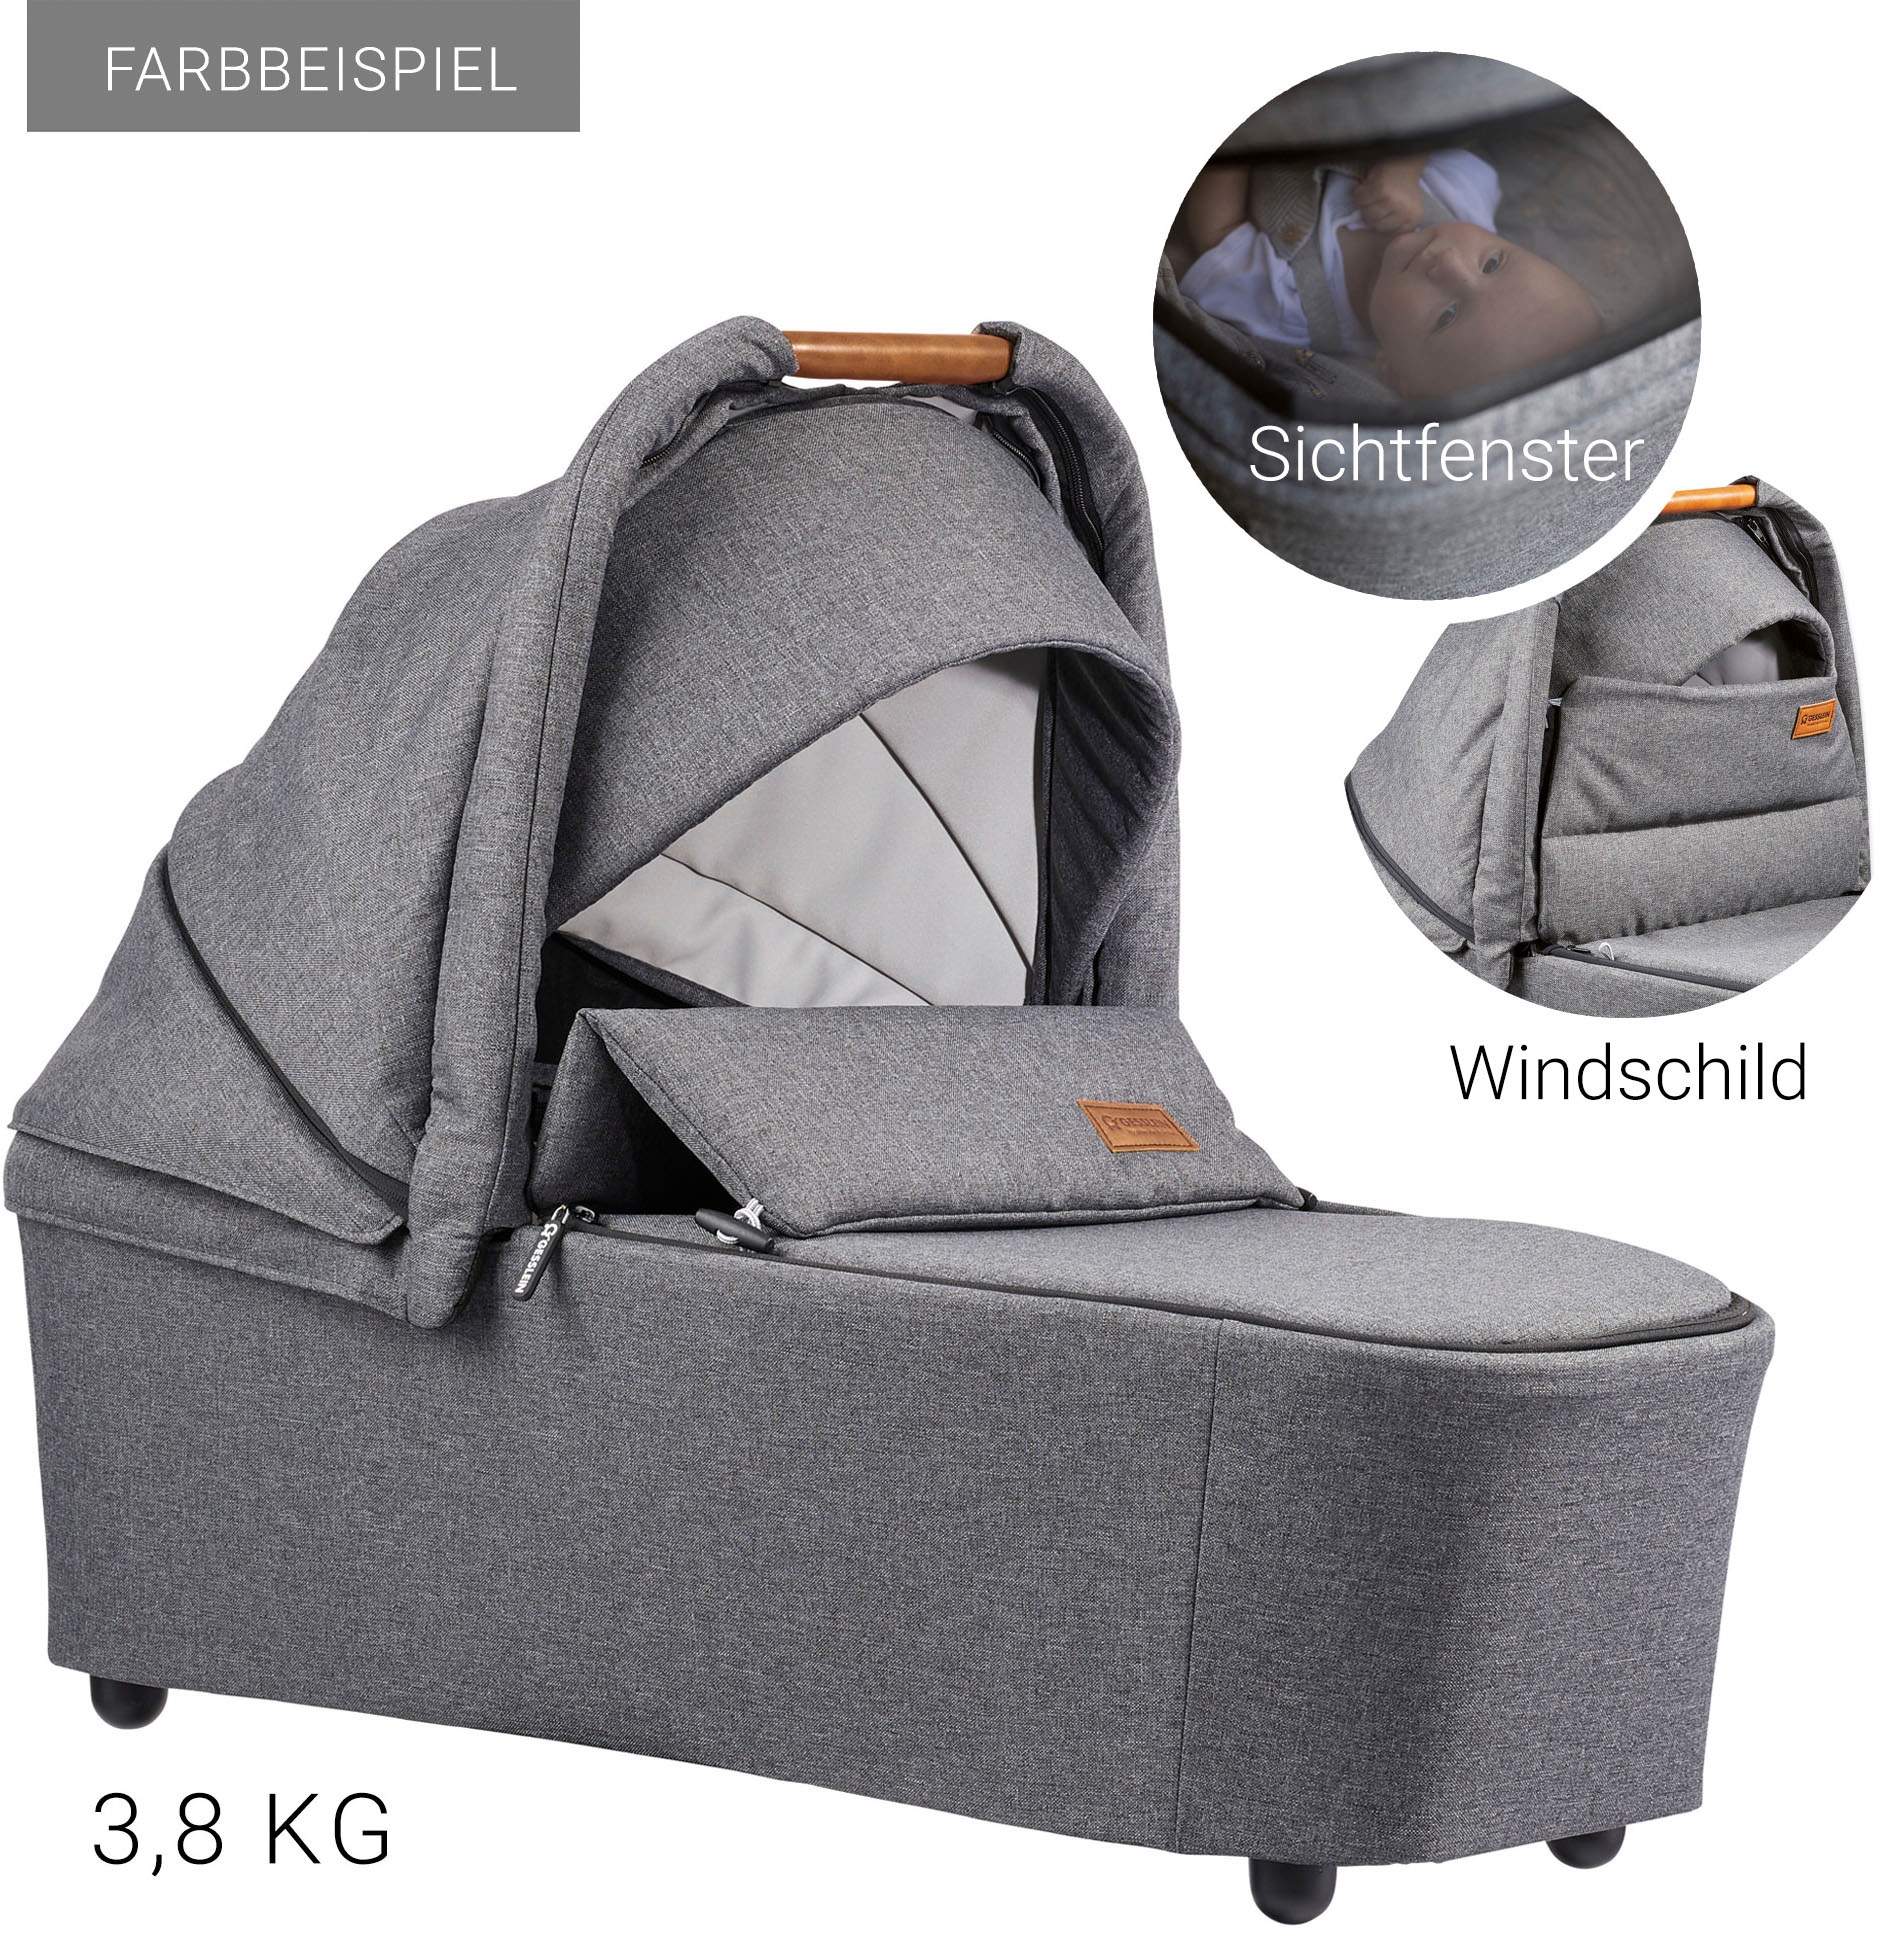 Gesslein Kombi-Kinderwagen »FX4 Soft+ mit Aufsatz Life, schwarz/cognac, dark olive«, mit Babywanne C3 und Babyschalenadapter